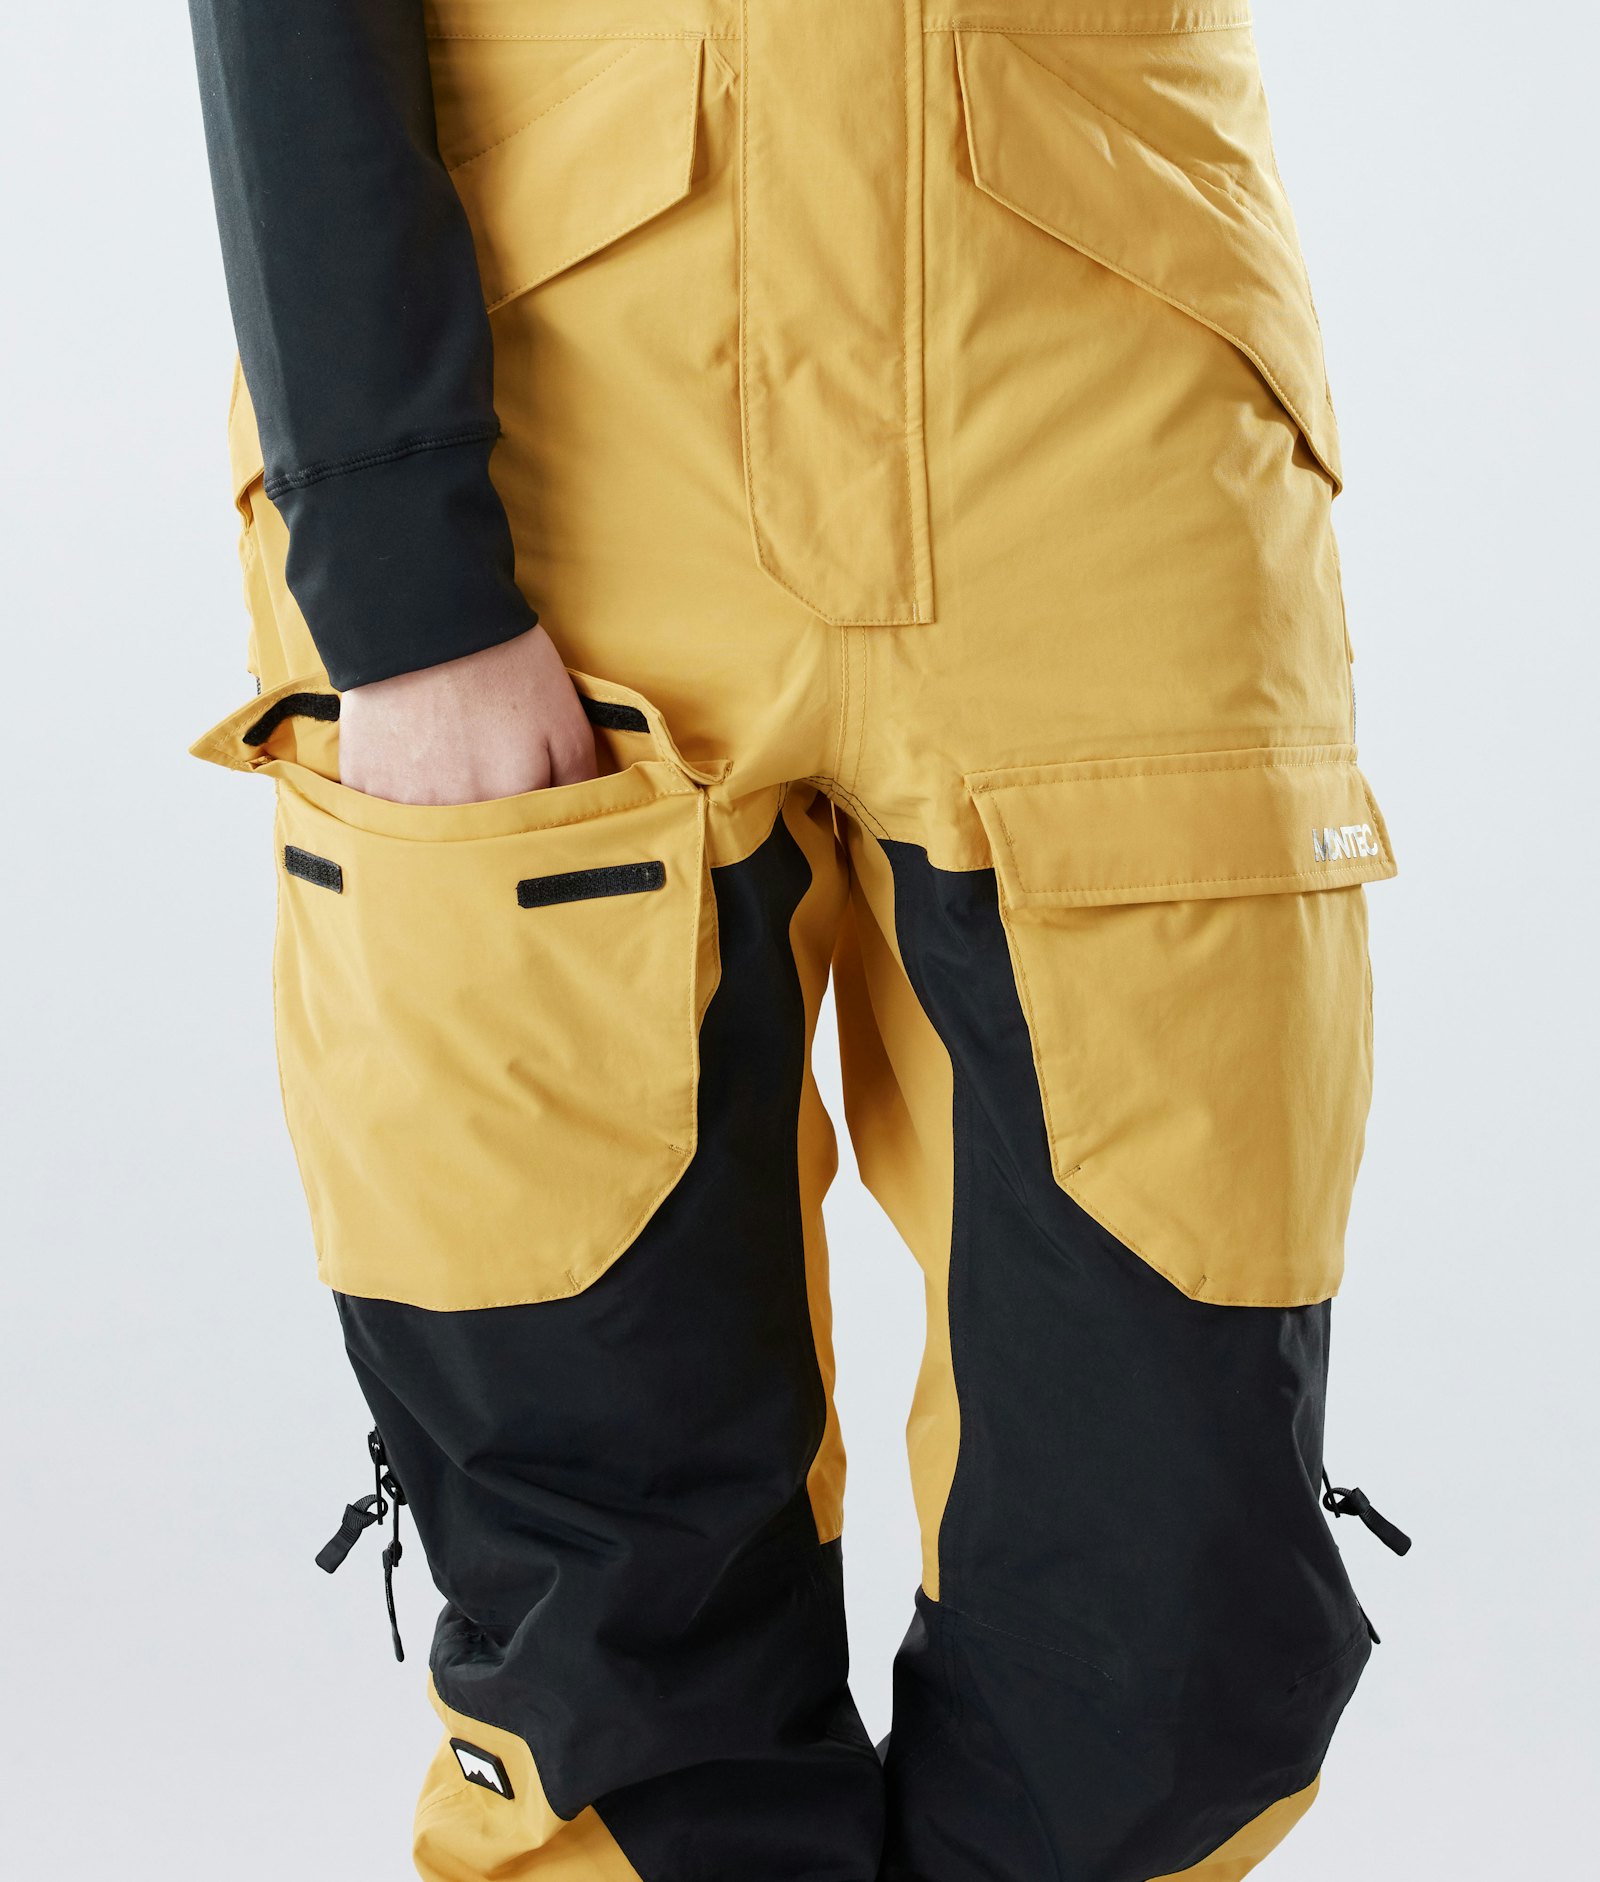 Fawk W 2020 Pantalon de Ski Femme Yellow/Black